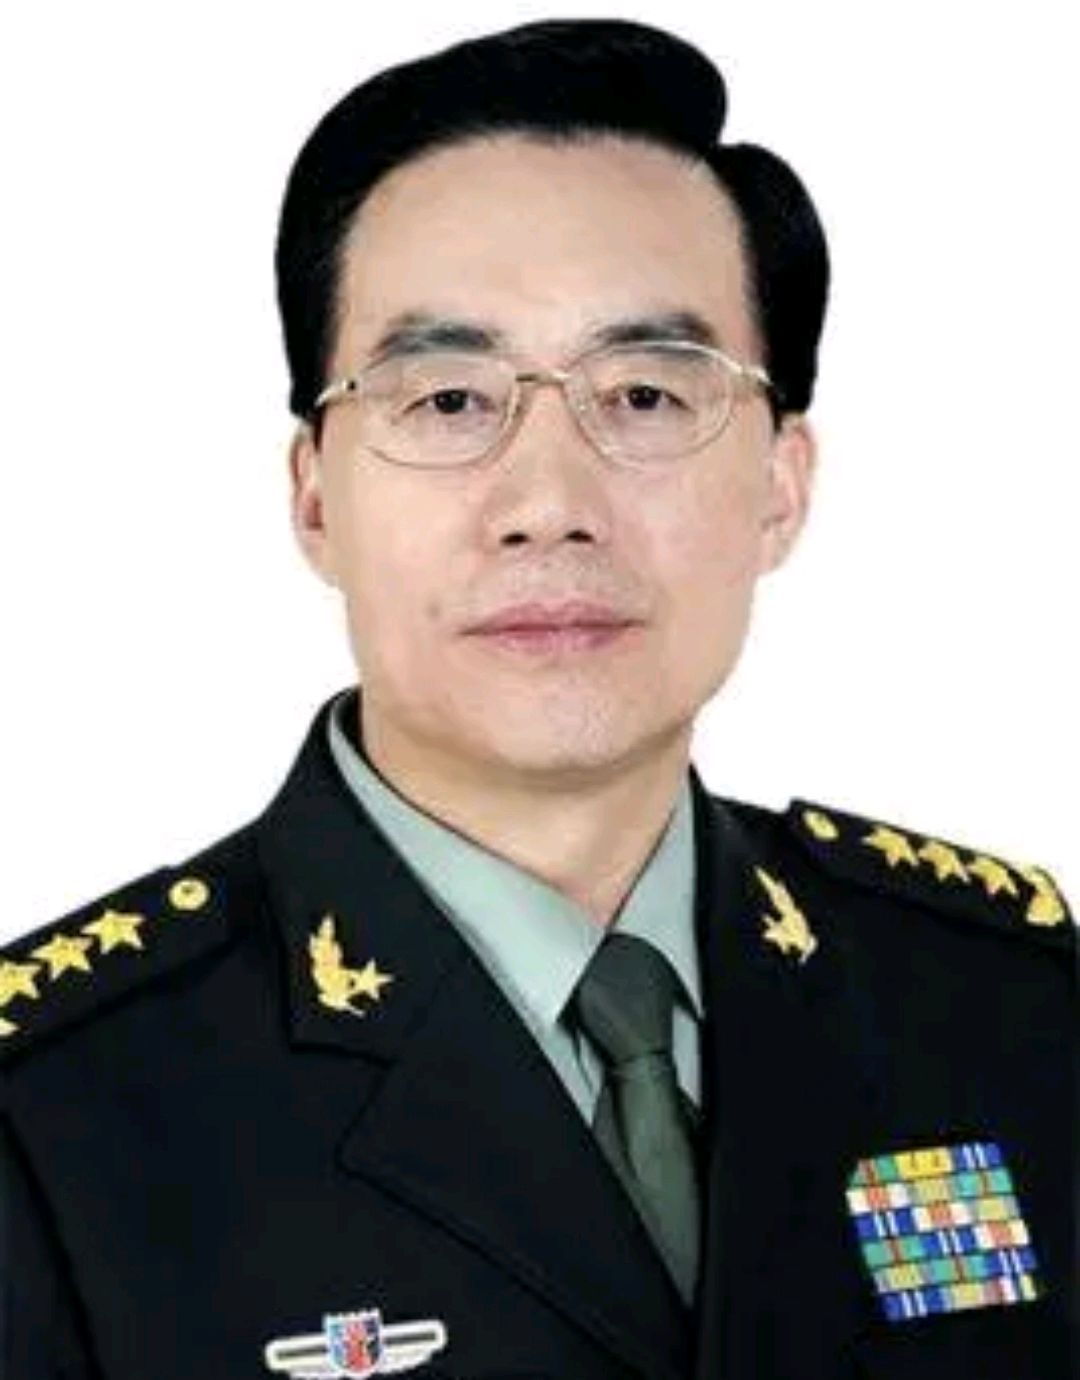 广州警备区司令员图片